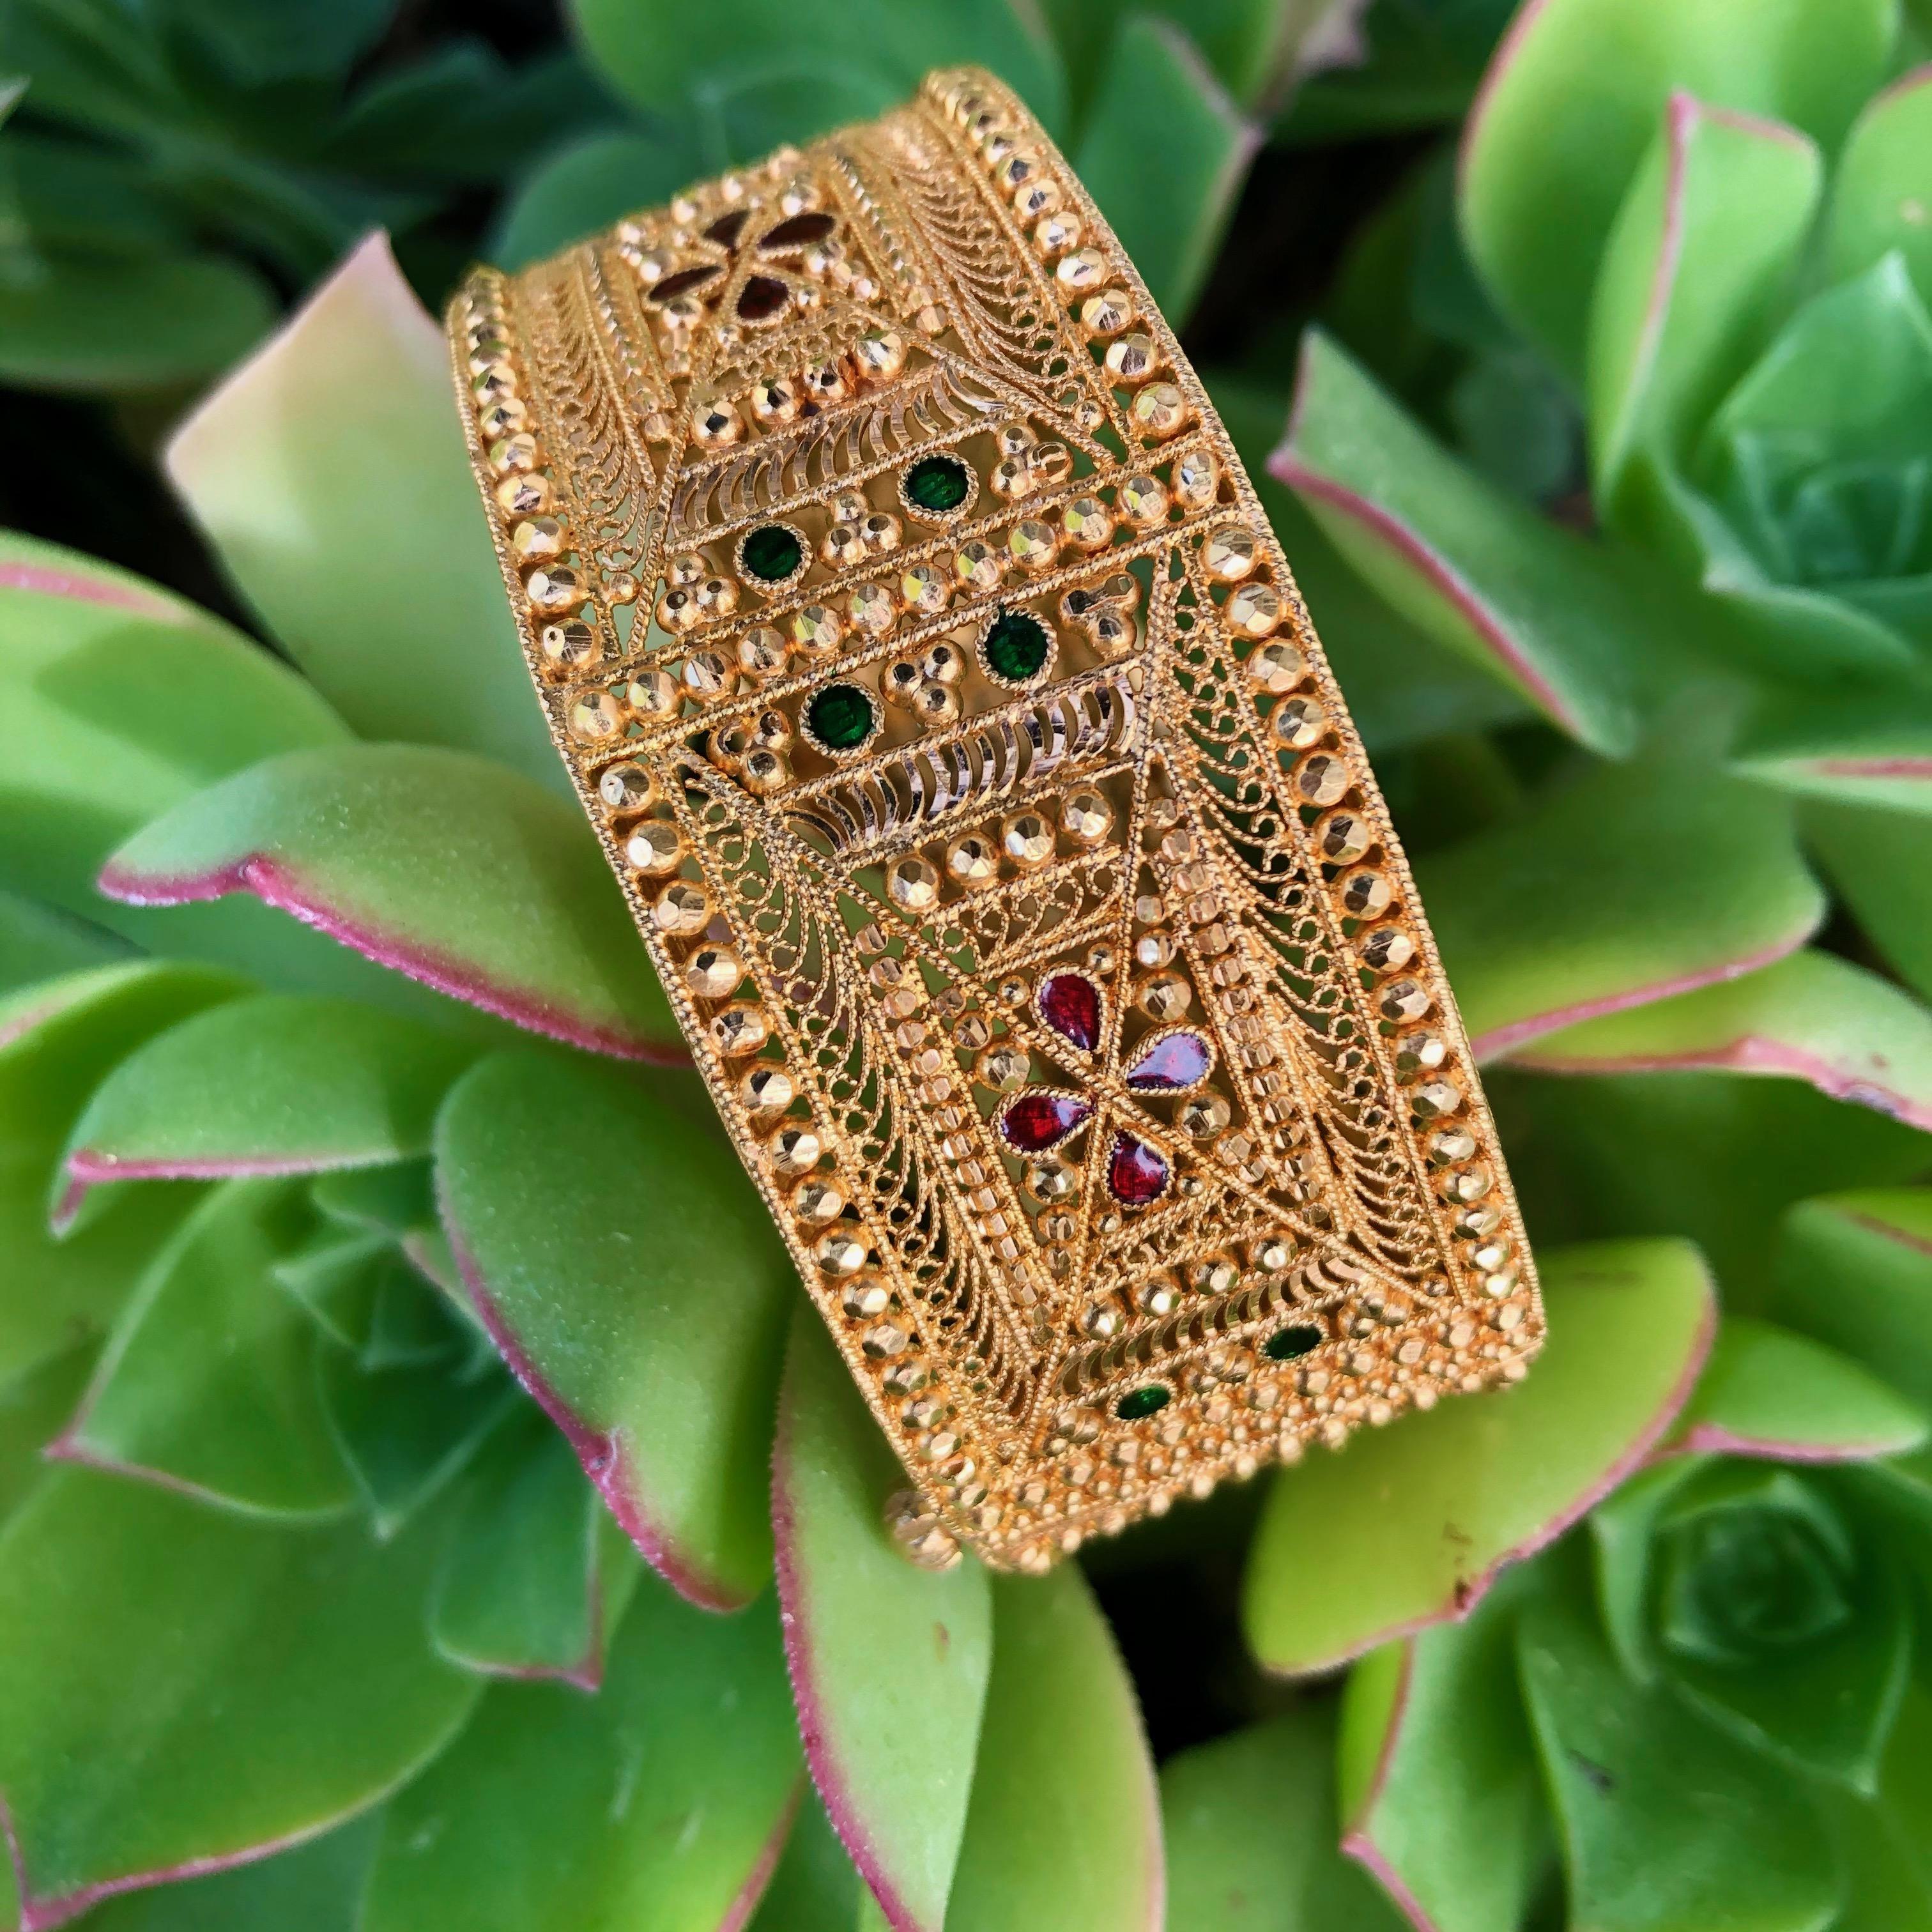 Joli bracelet de style moyen-oriental fabriqué en or jaune 21 carats. Le bracelet est orné de motifs filigranes, de perles à facettes, de bords gravés à la main et de petites zones d'émail rouge et vert. Le bracelet mesure 25 mm de large, le fermoir